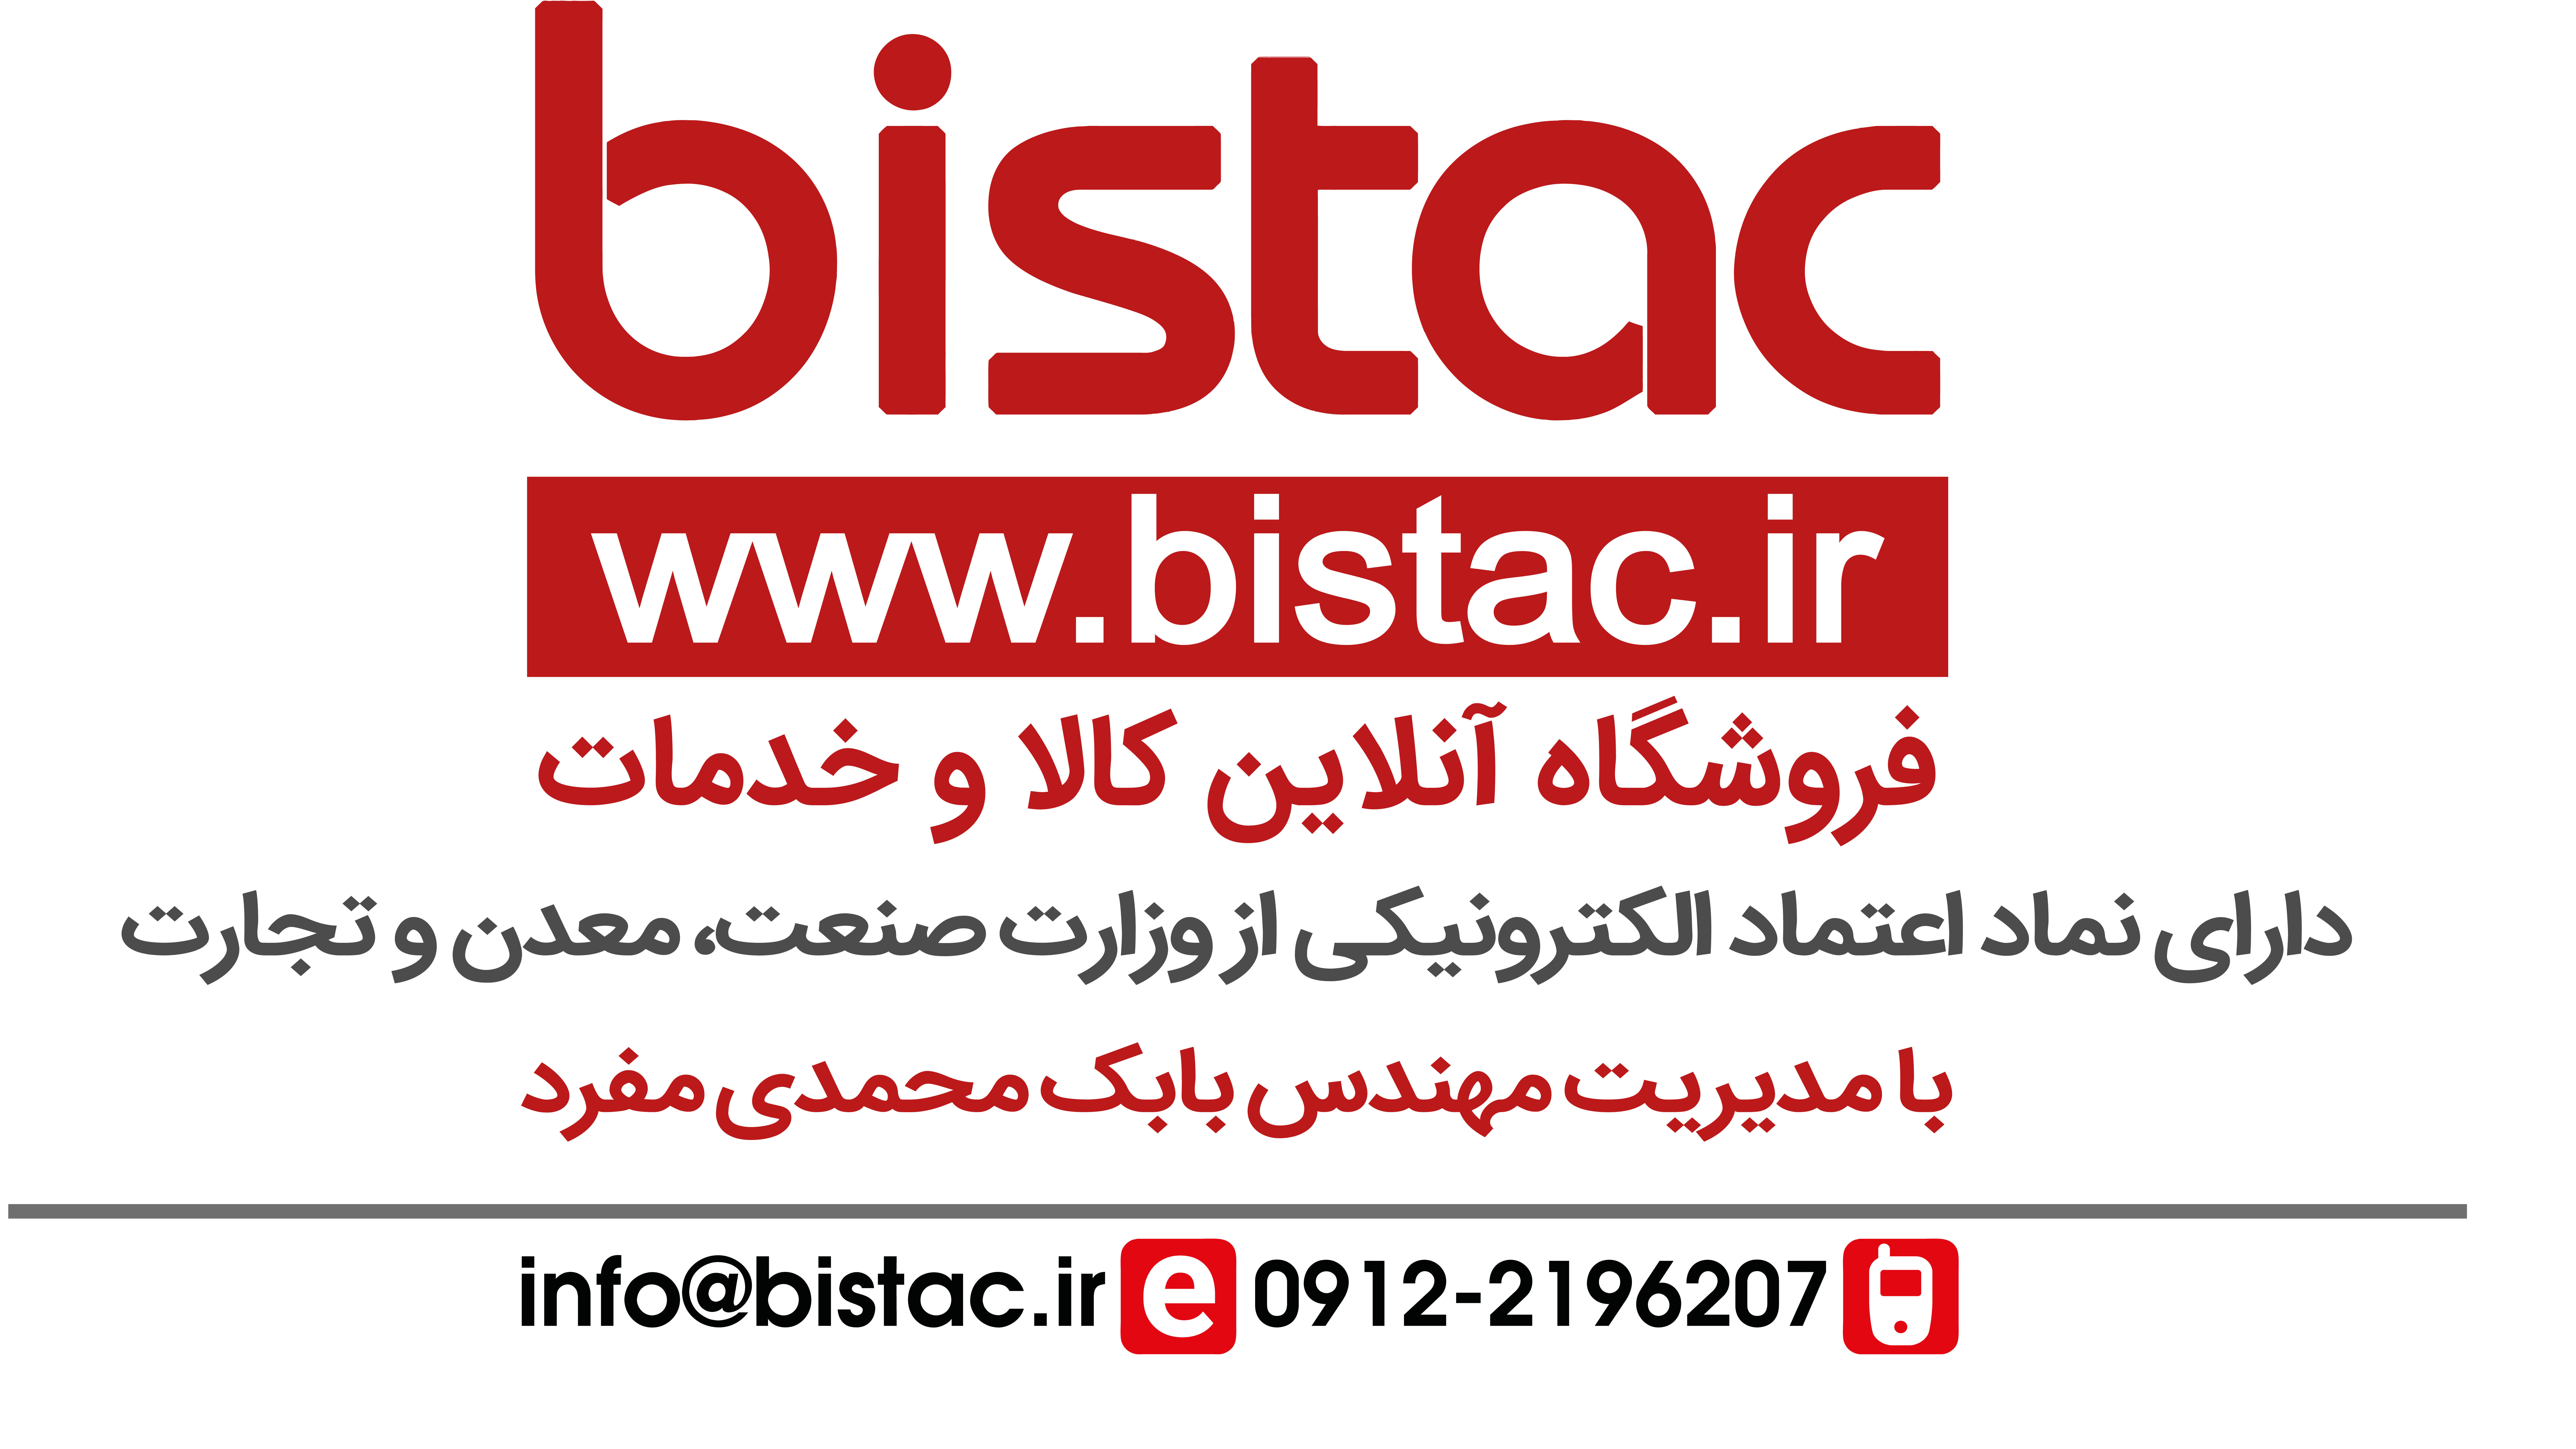 فروشگاه ای;نترنتی; بی;ستک - bistac.ir - تهران